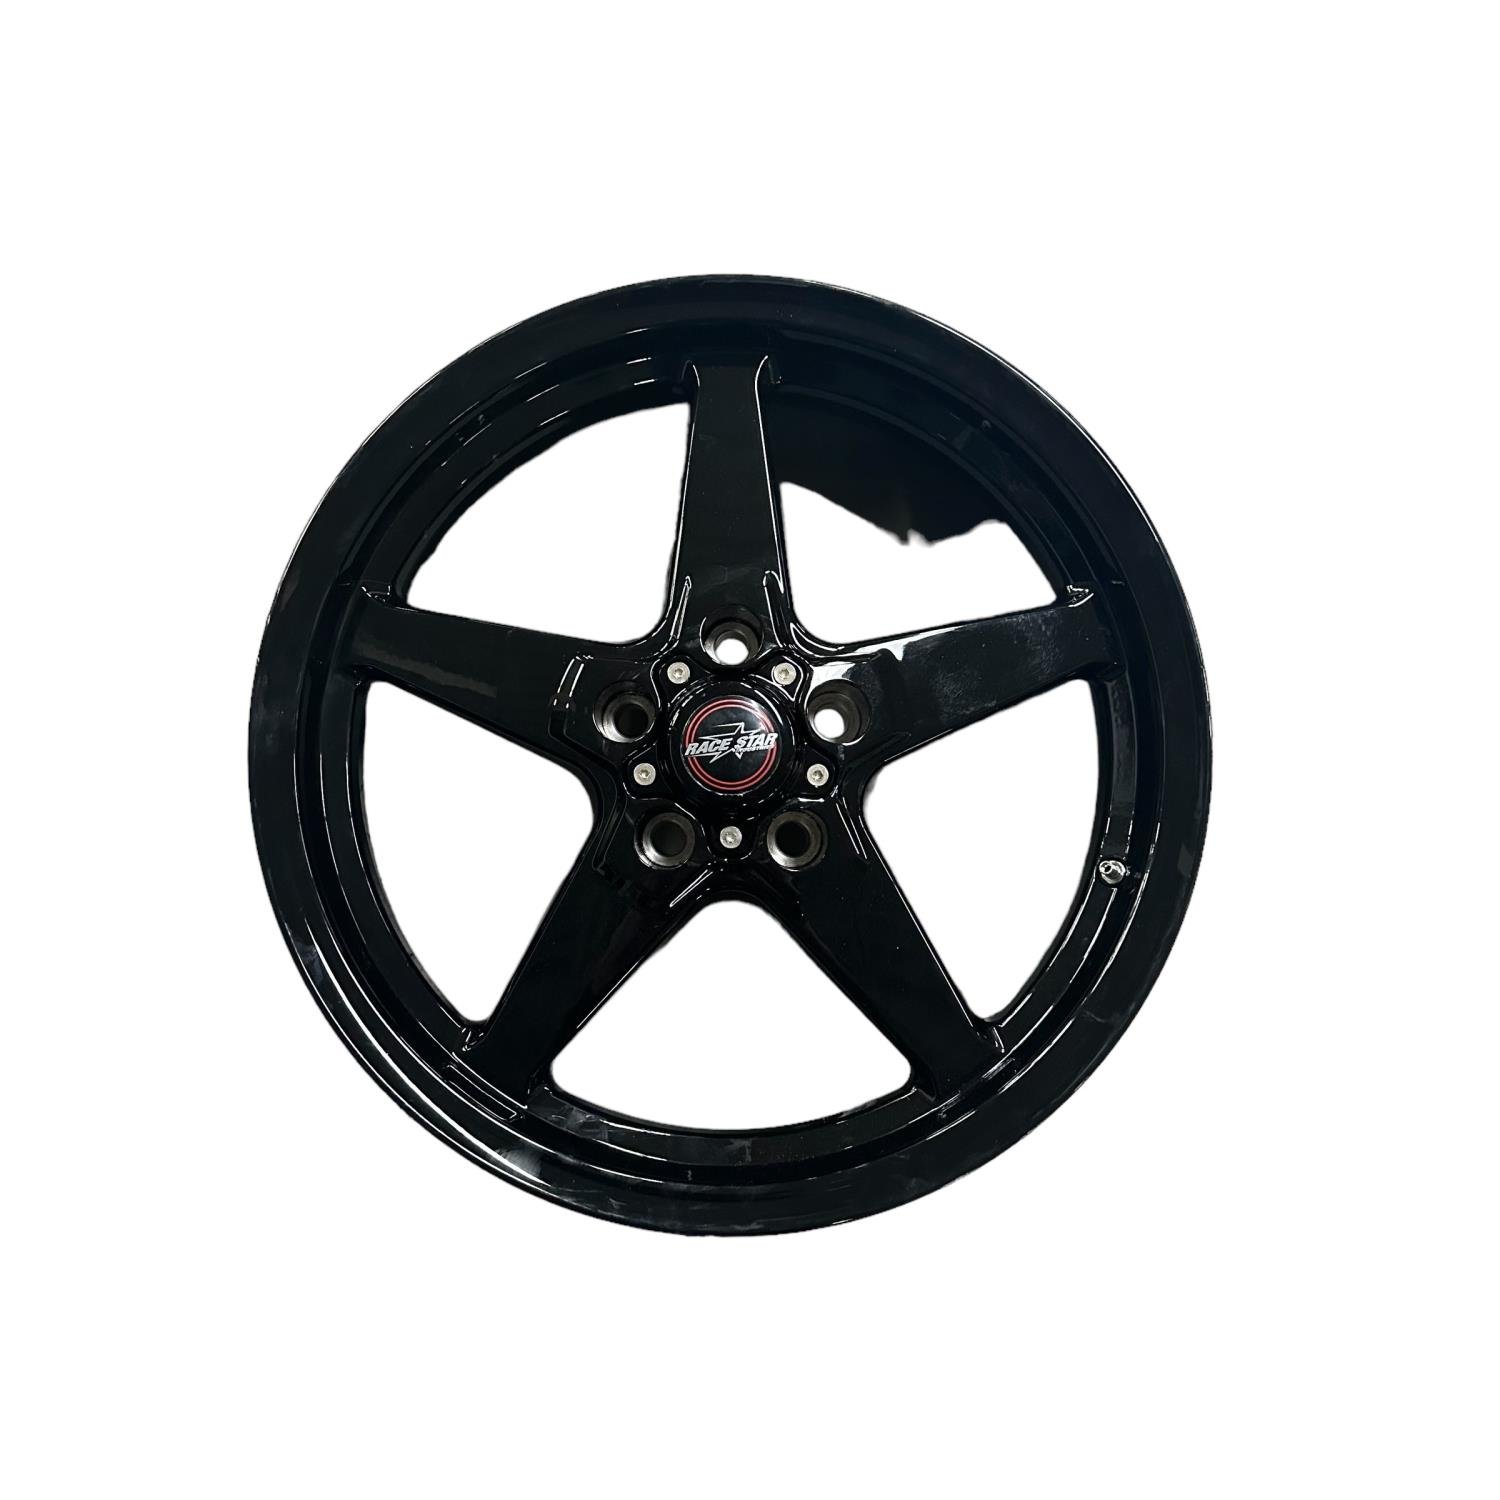 *BLEMISHED 92 Series Drag Star Bracket Racer Wheel